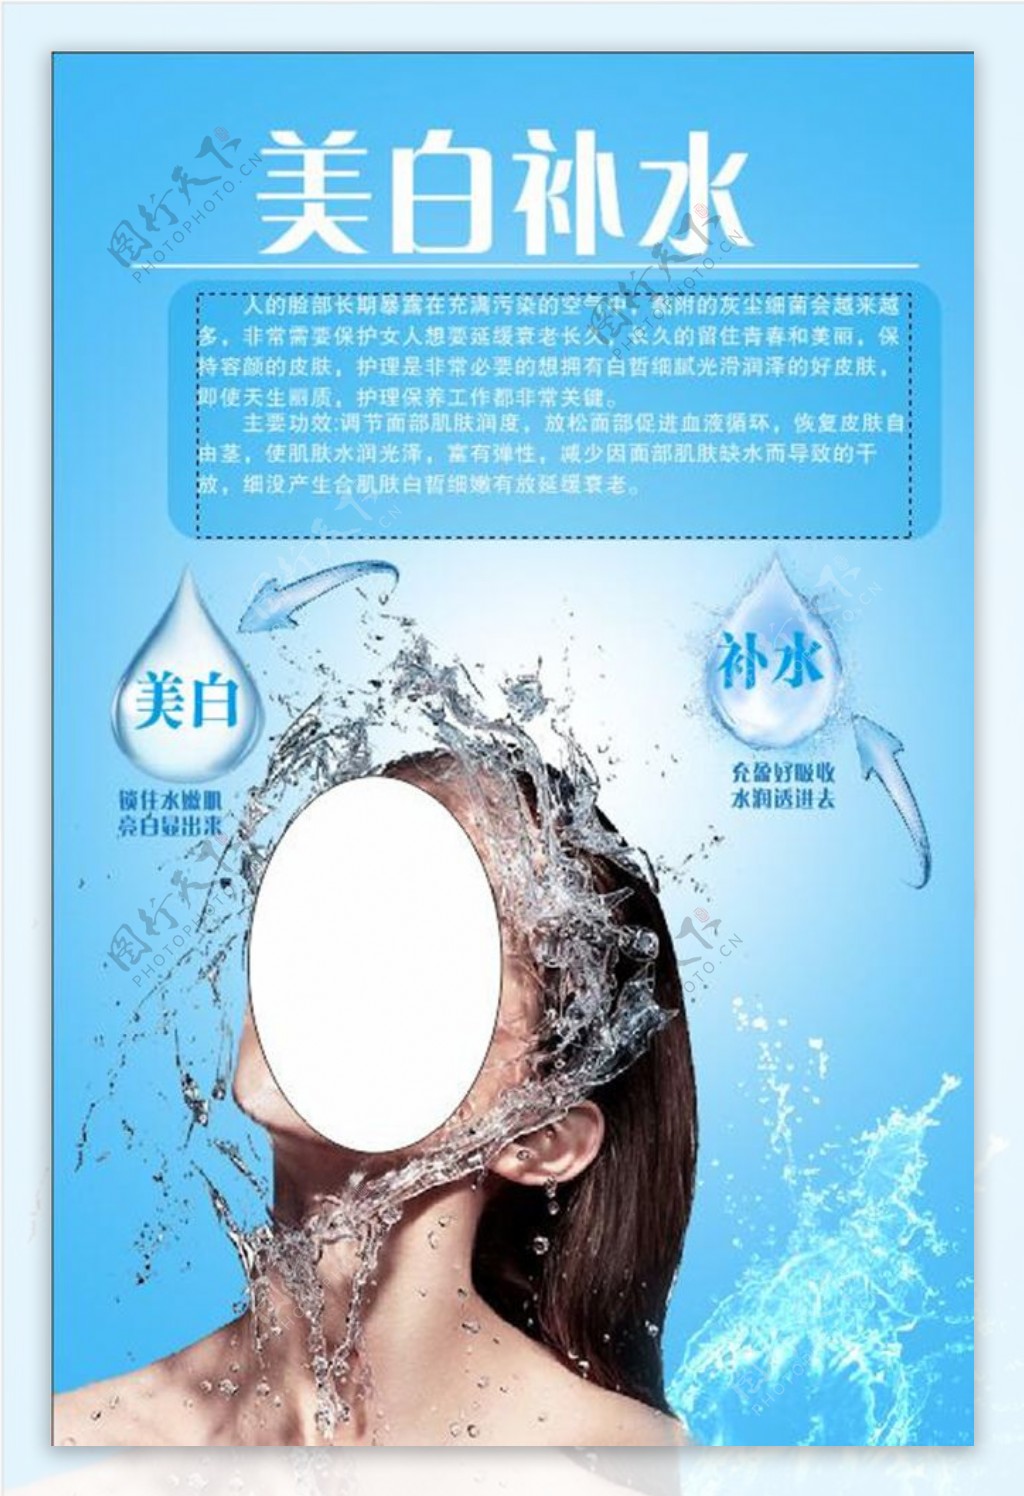 夏季补水润肤精华液化妆品广告海报模板套装[PSD] – 设计小咖